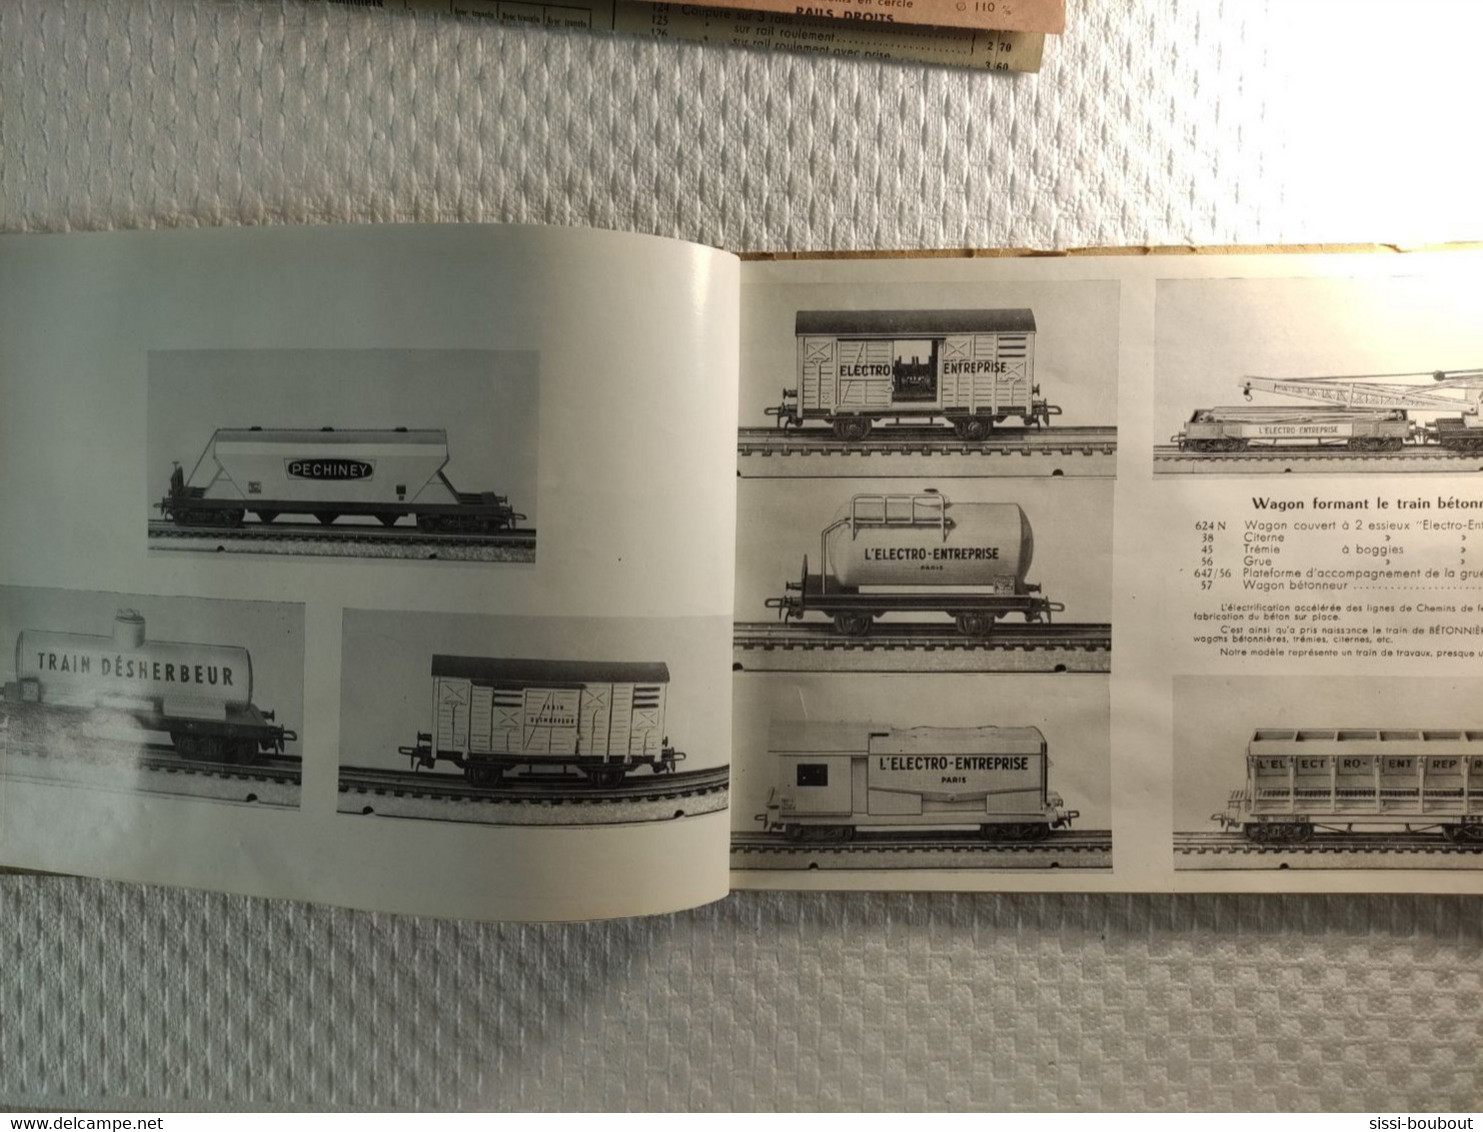 Catalogue de 1960 - "Chemins de Fer Electriques Miniature - VB" -  ECARTEMENT HO - SNCF - Trains, locomotives etc...